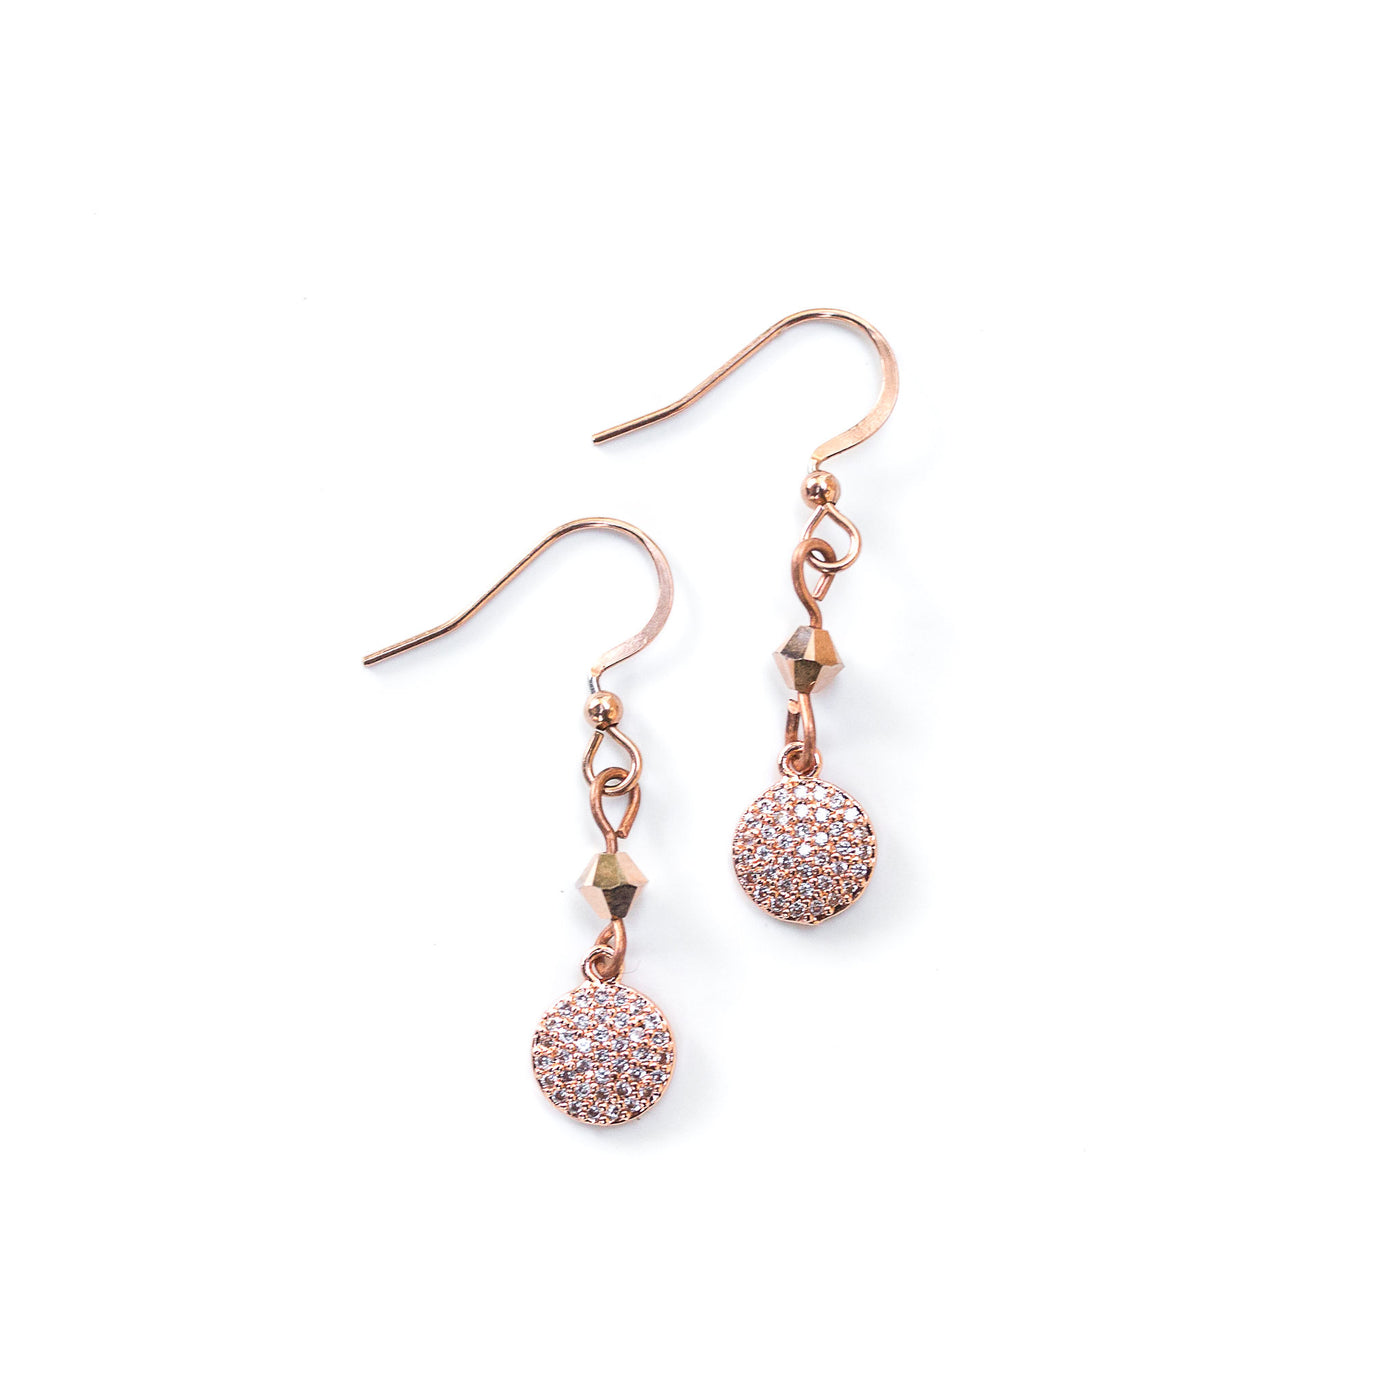 Chanelle earrings